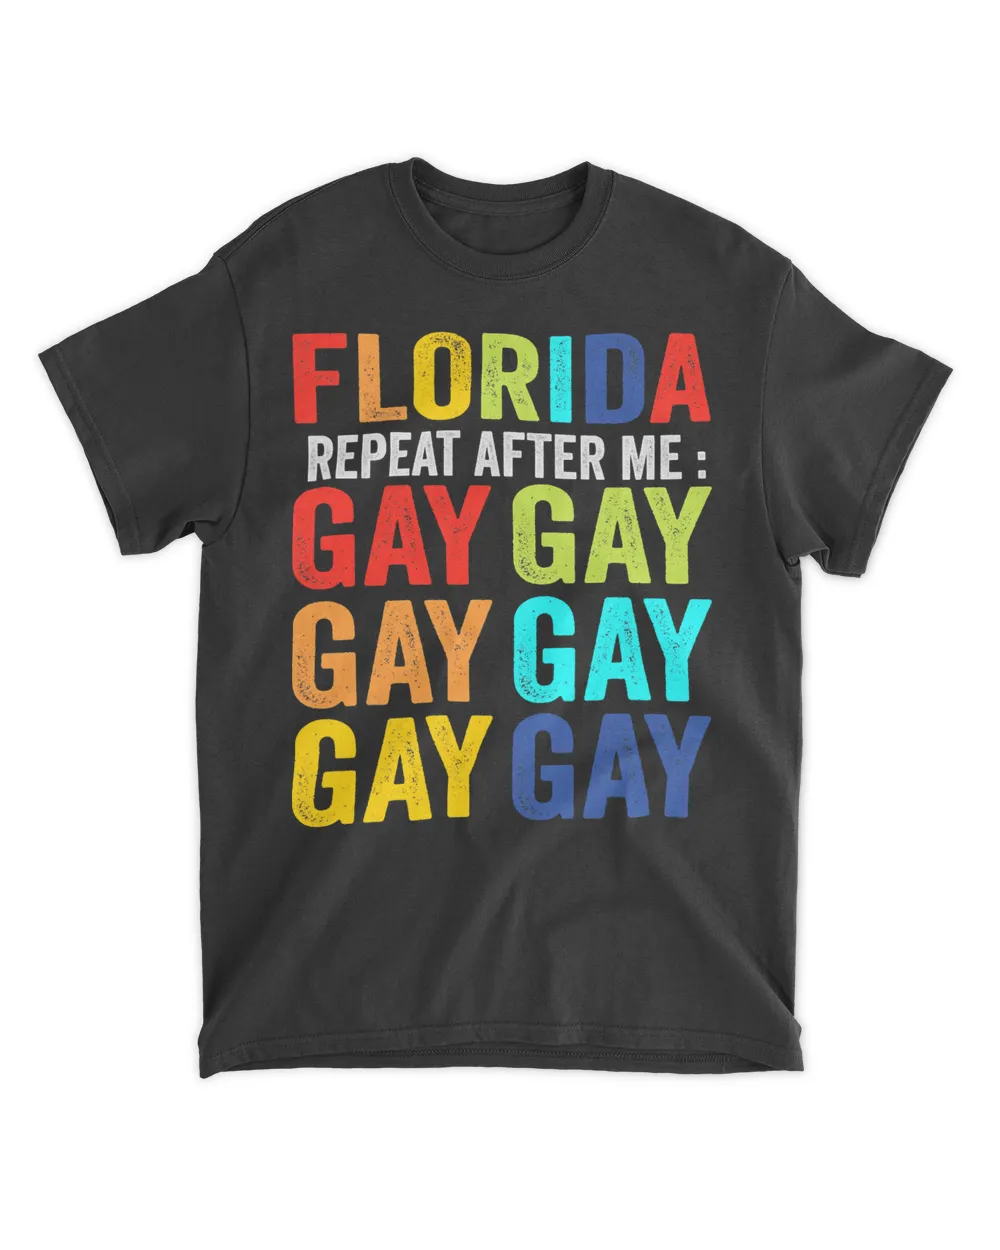 Florida Gay Say Gay Say Trans Stay Proud LGBT Gay Rights